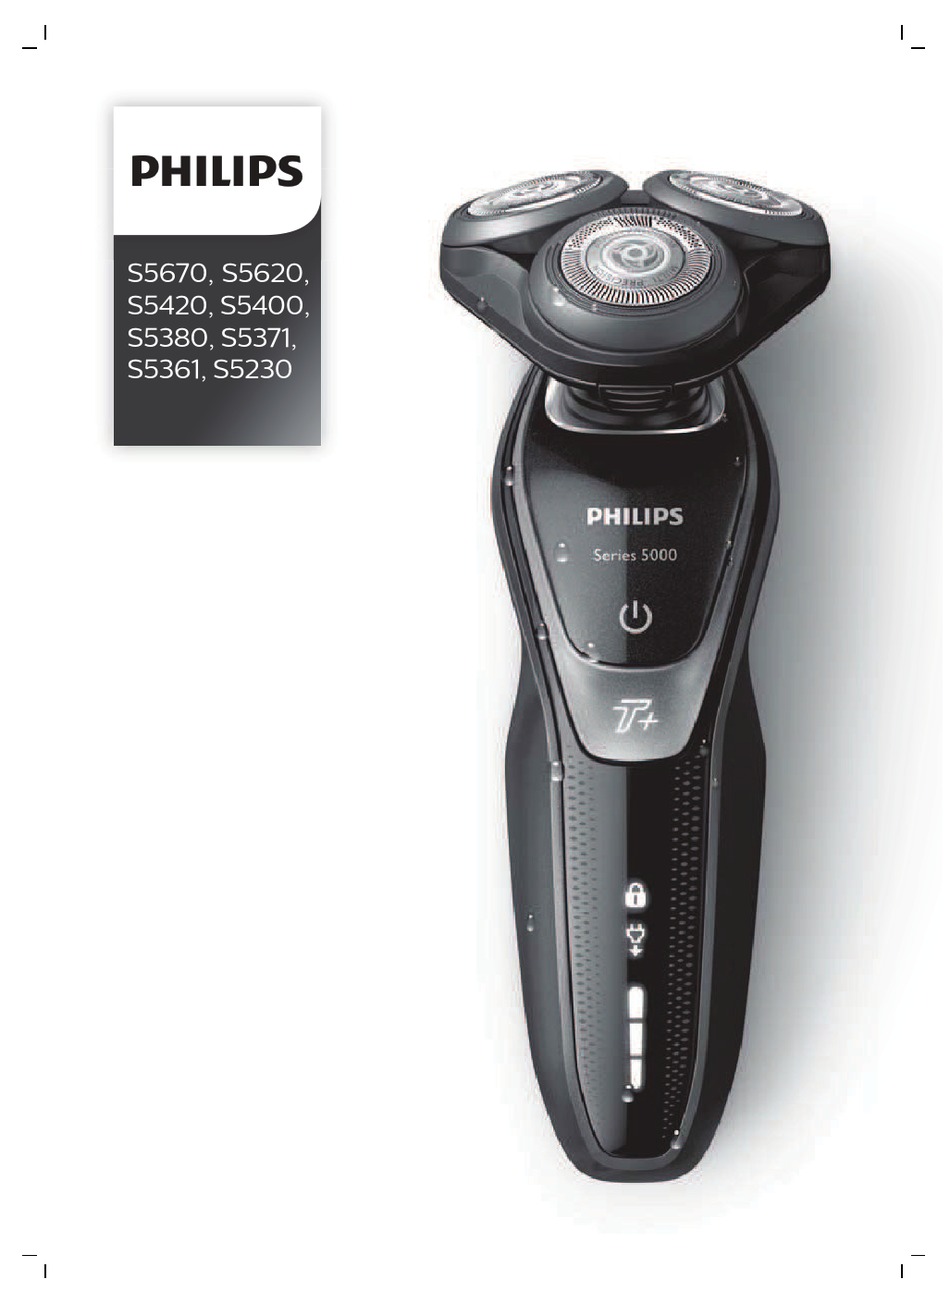 Филипс series 5000. Электробритва Philips s5110. Филипс Сериес 5000. Электробритва Philips s5530/06. Philips s5620 AQUATOUCH.